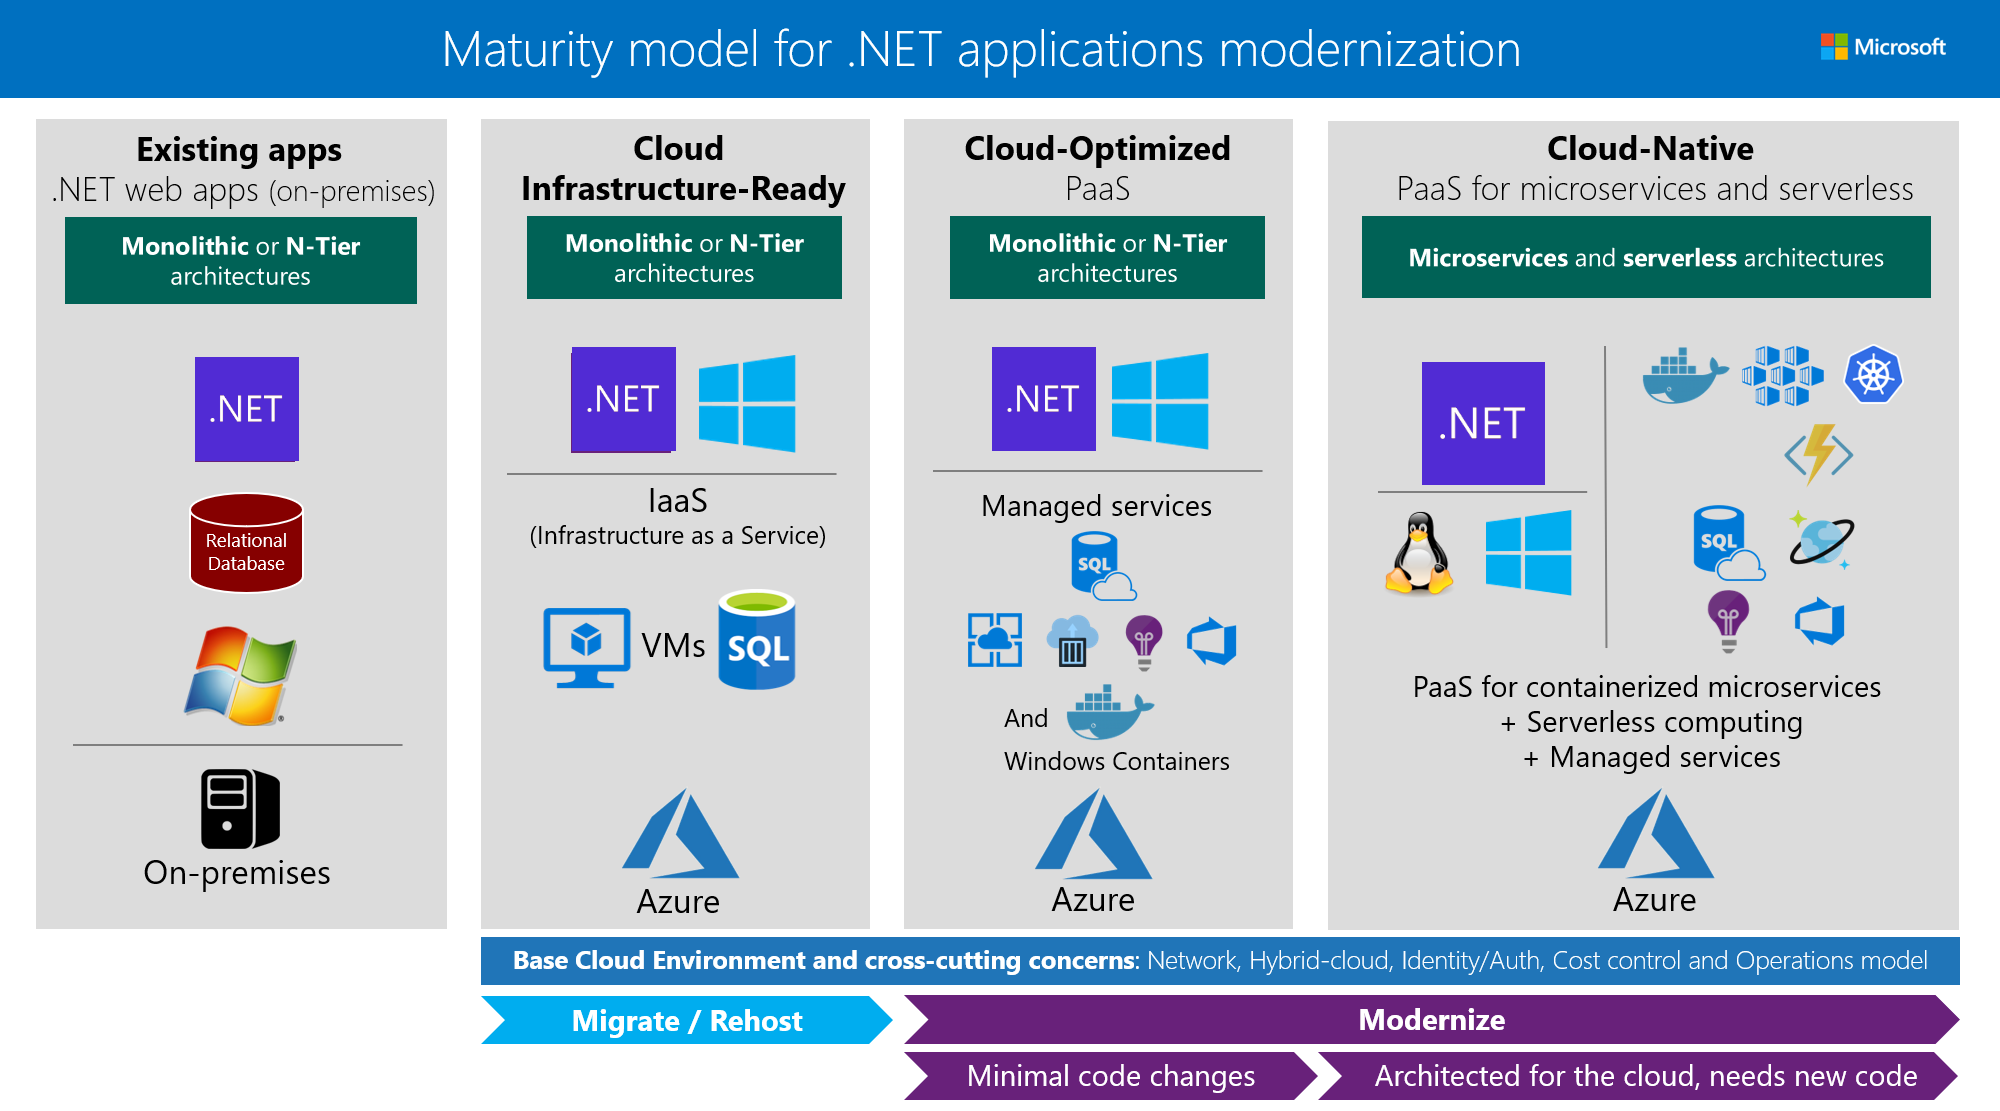 既存の .NET Web アプリケーションの最新化のための成熟度レベルごとの主要なテクノロジ